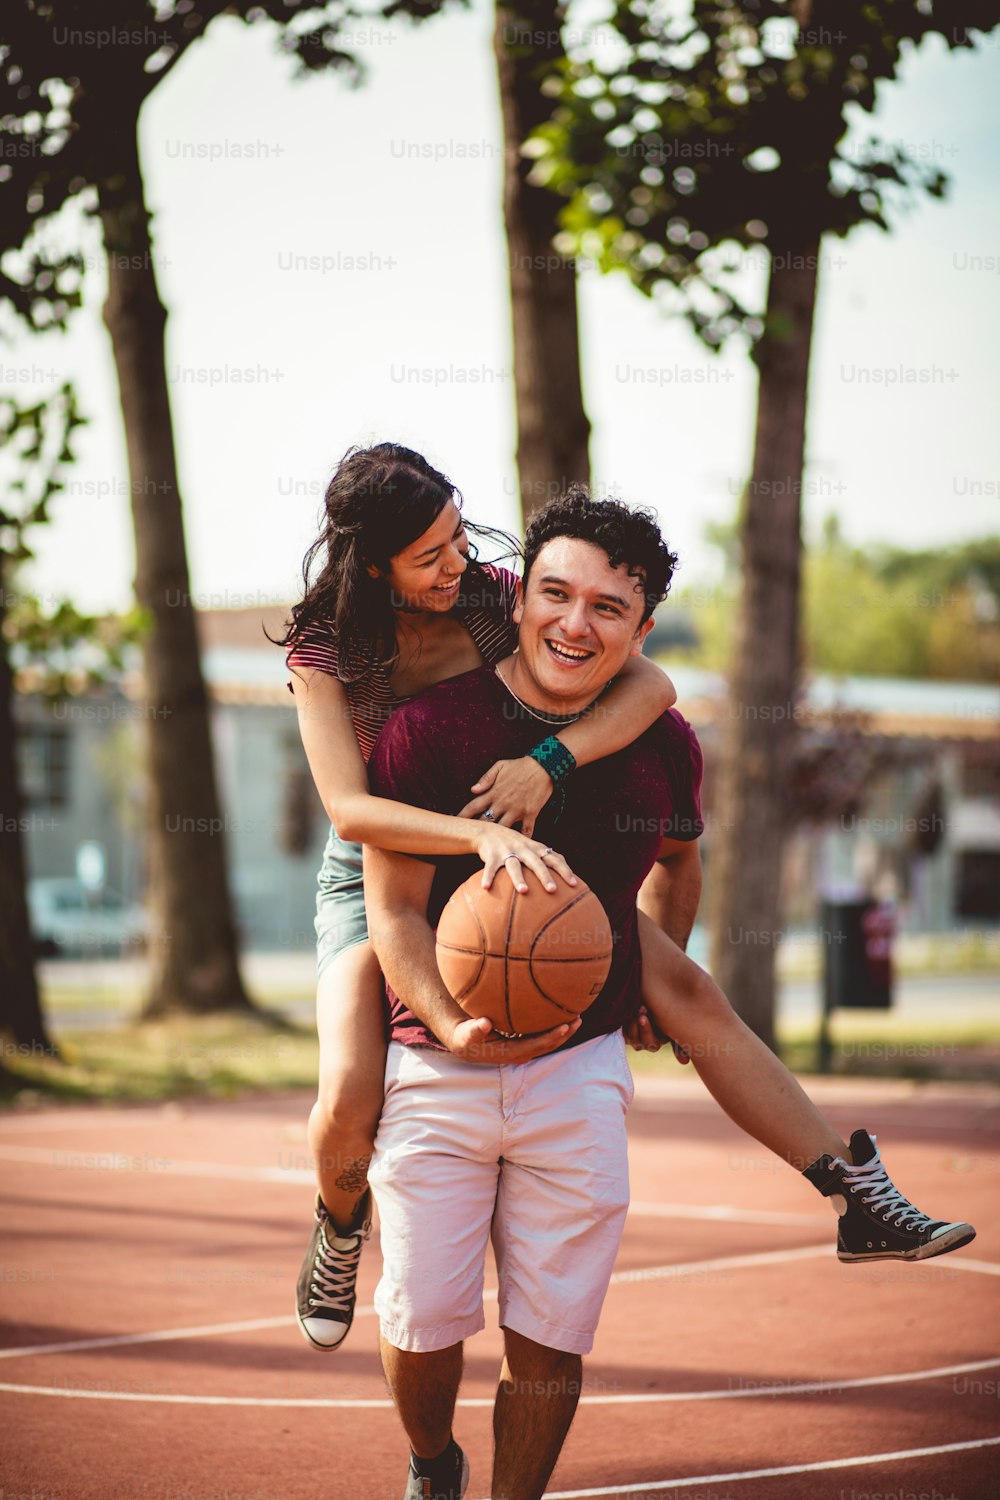 Jovem e mulher jogando basquete na quadra — Duas pessoas